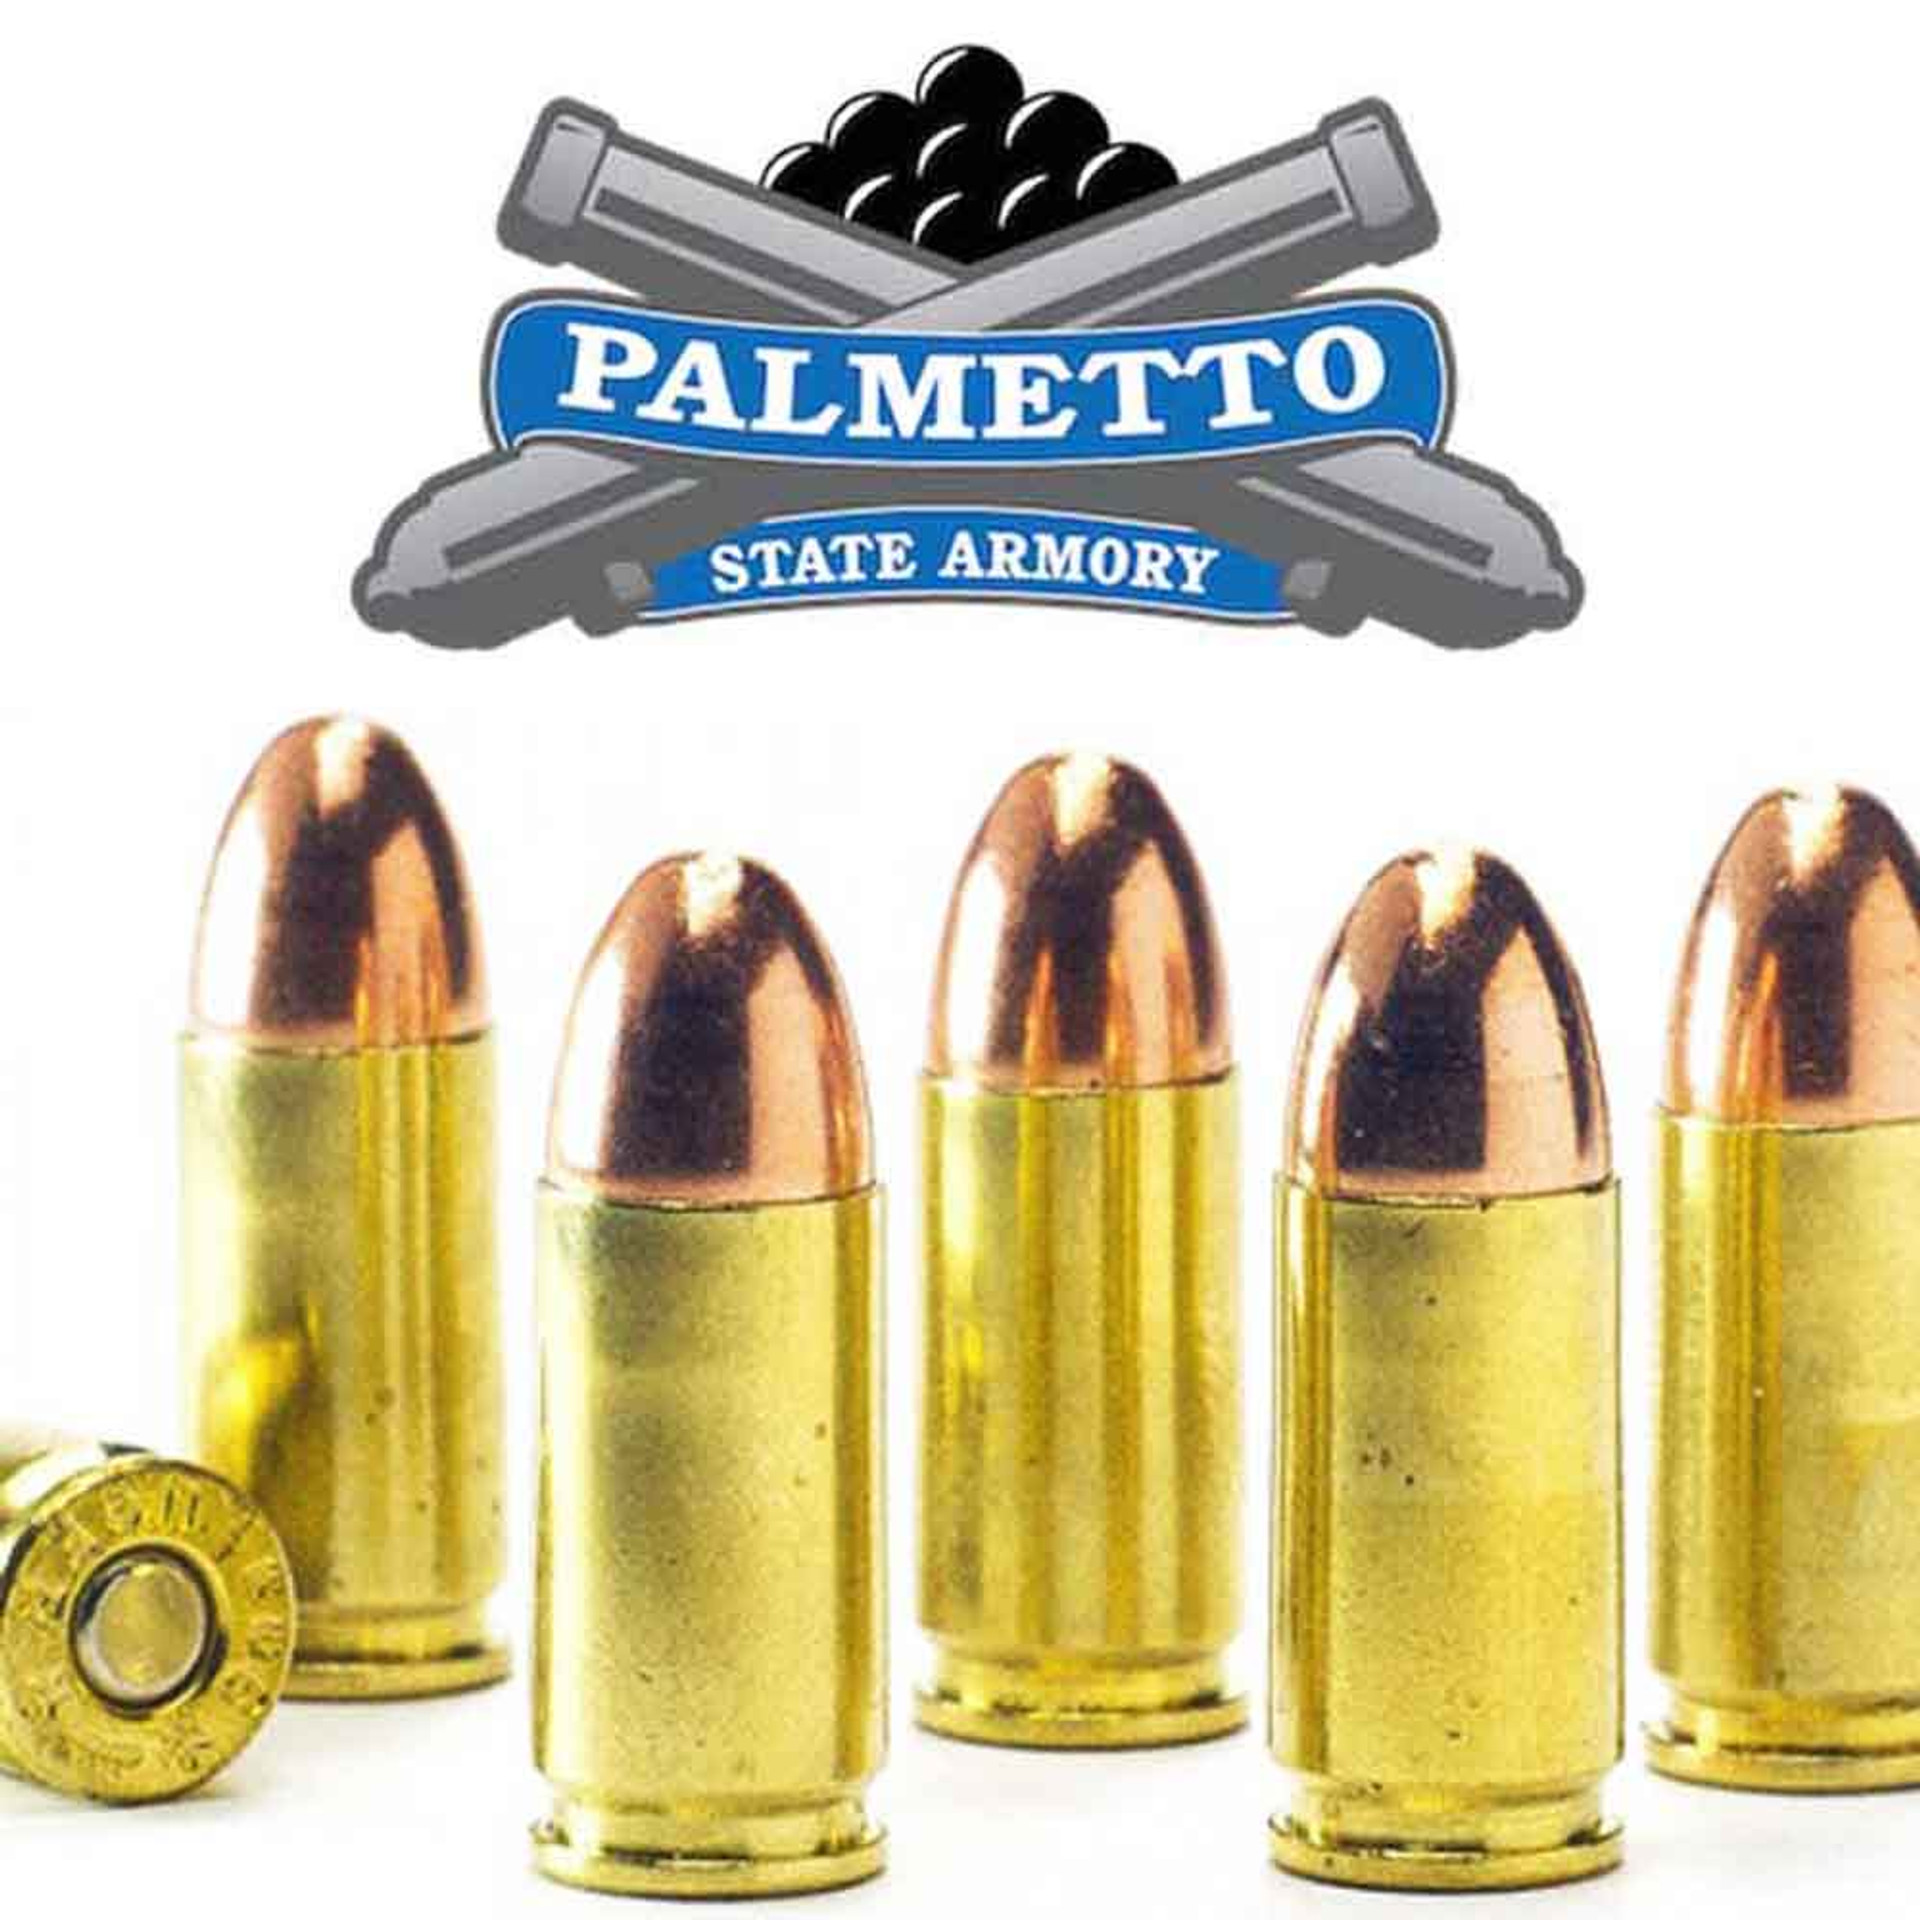 palmetto-state-armory-palmetto-state-armory-ammo-guns